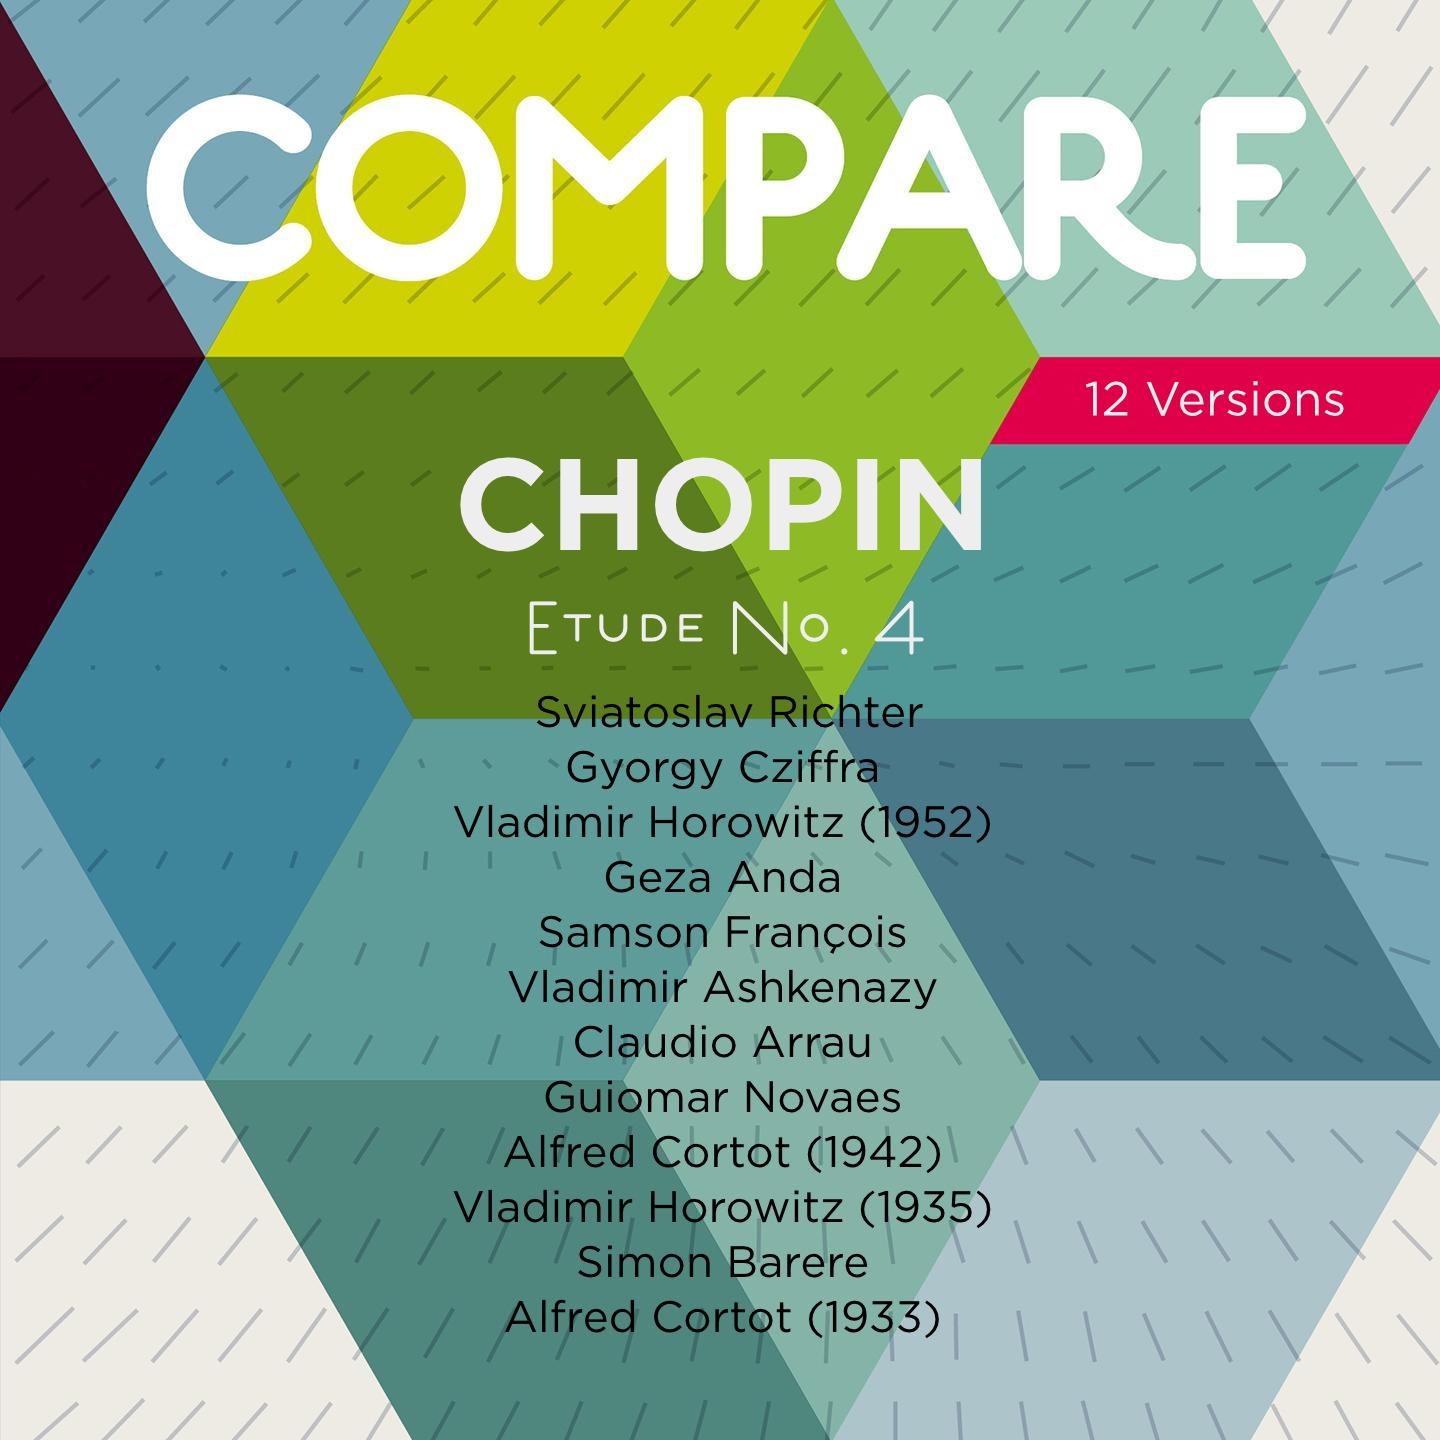 Chopin: Etudes, Op. 10 No. 4, Richter vs. Cziffra vs. Horowitz vs. Anda vs. Fran ois vs. Ashkenazy vs. Arrau vs. Novaes vs. Cortot vs. Horowitz vs. Barere vs. Cortot